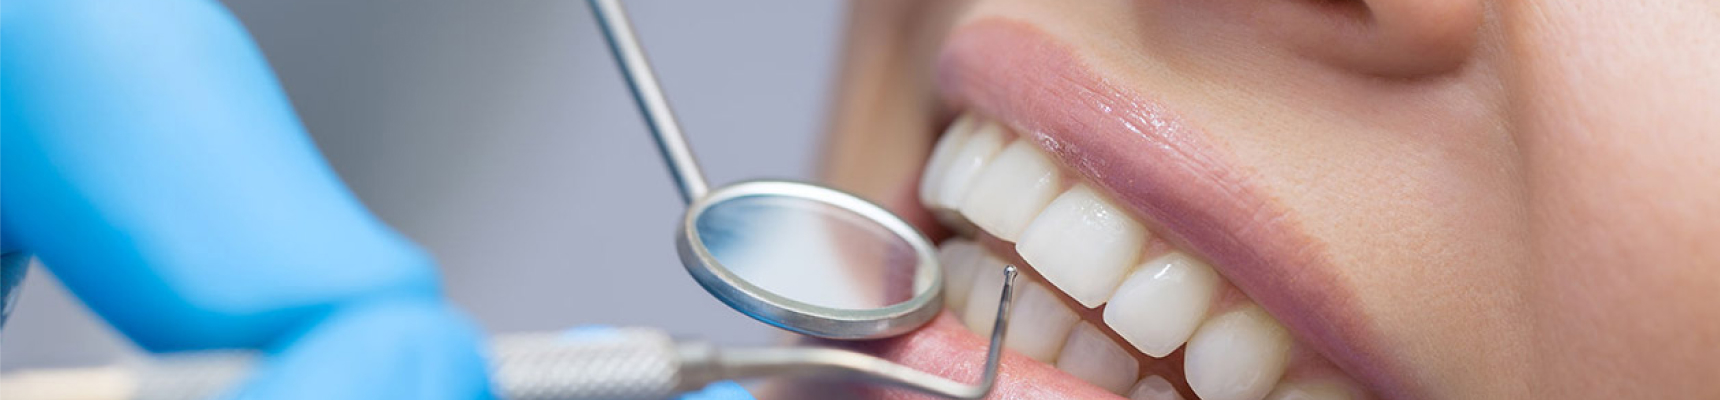 Cabinet dentaire Claude Monet Drs Nguyen traitement composites dentaires